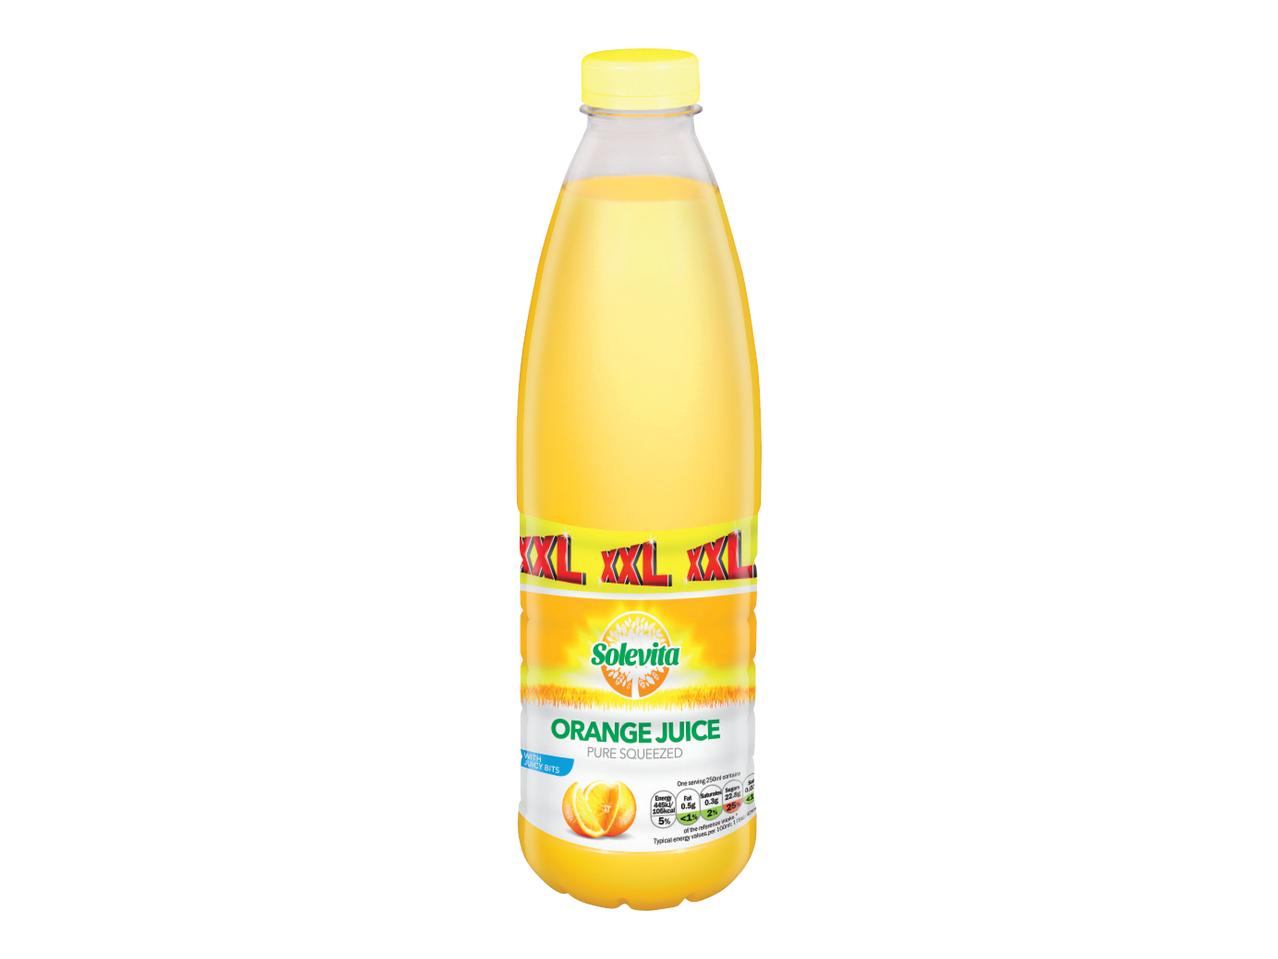 SOLEVITA Pure Squeezed Orange Juice